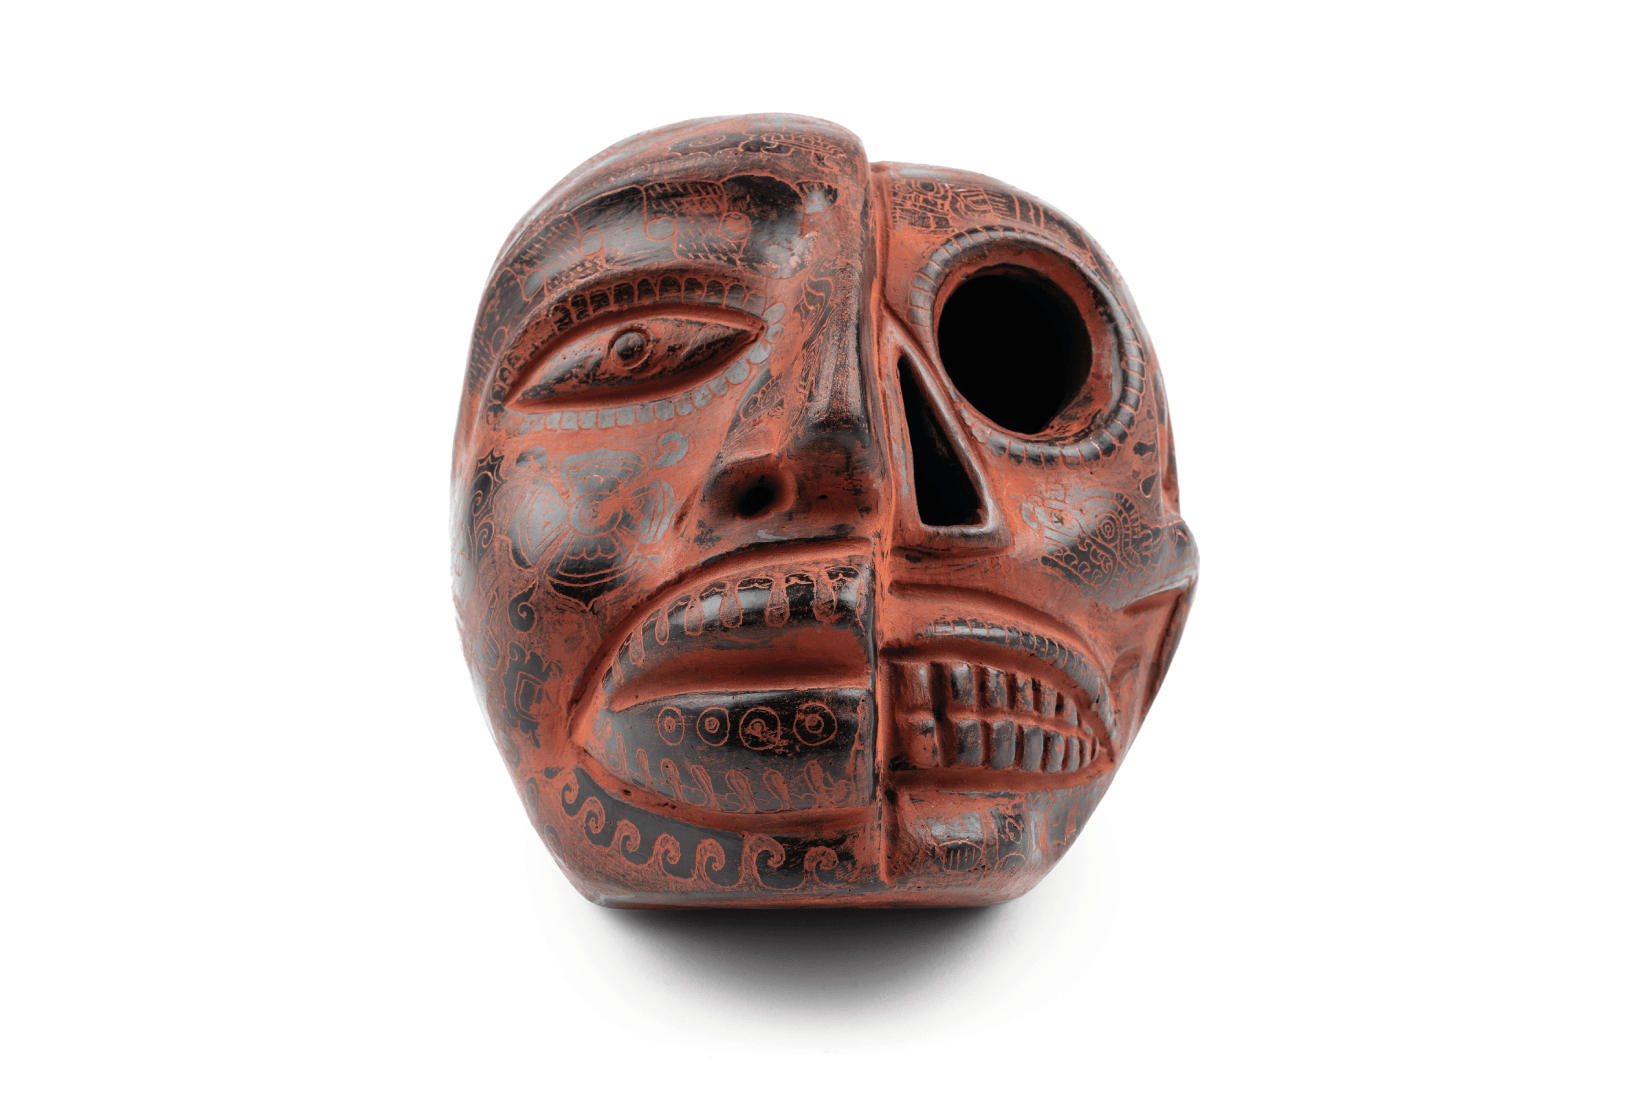 Cráneo de vida/muerte, de inspiración prehispánica. Barro esgrafiado. CDMX. Col. Miguel Abruch. (Foto: GLR Estudio).